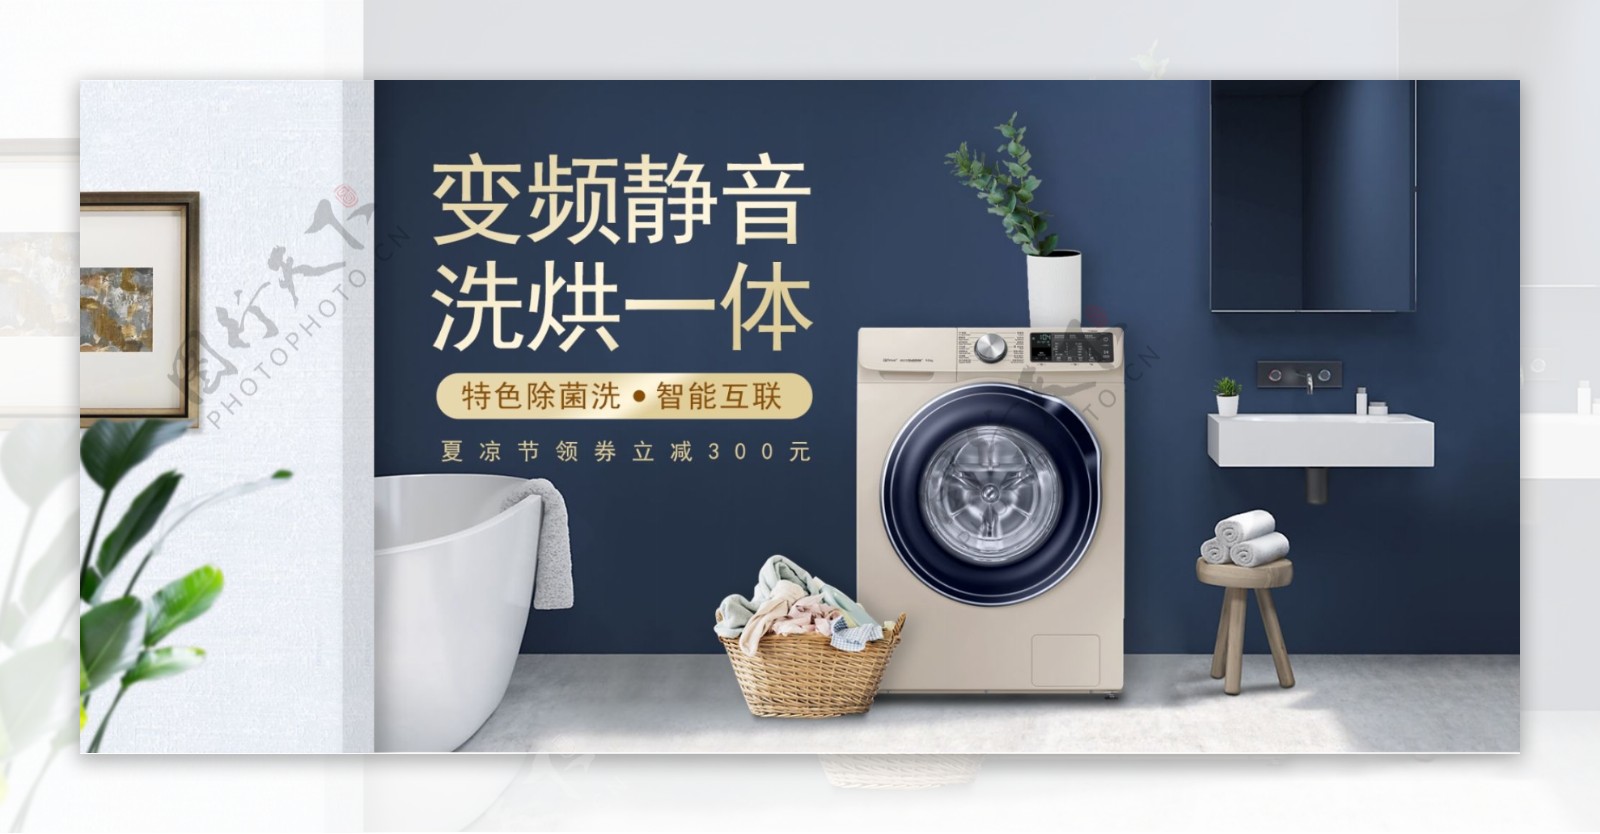 夏季电器蓝色大气高端洗衣机夏凉节海报